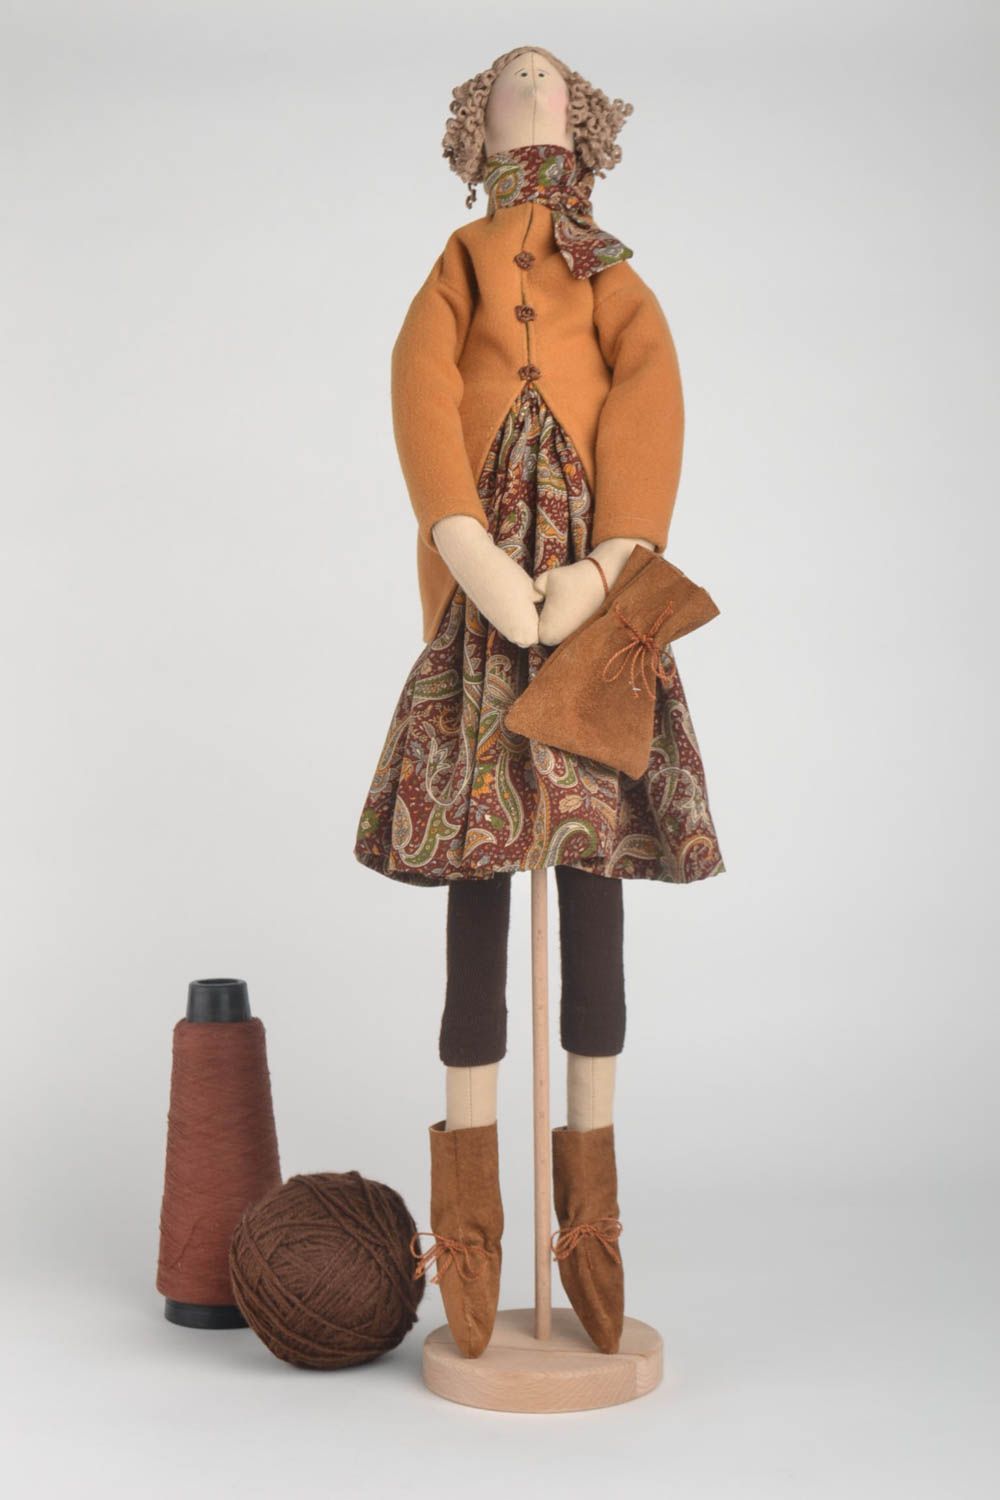 Handmade Stoff Puppe Haus Dekoration Geschenk für Frau mit Ständer in Braun foto 1